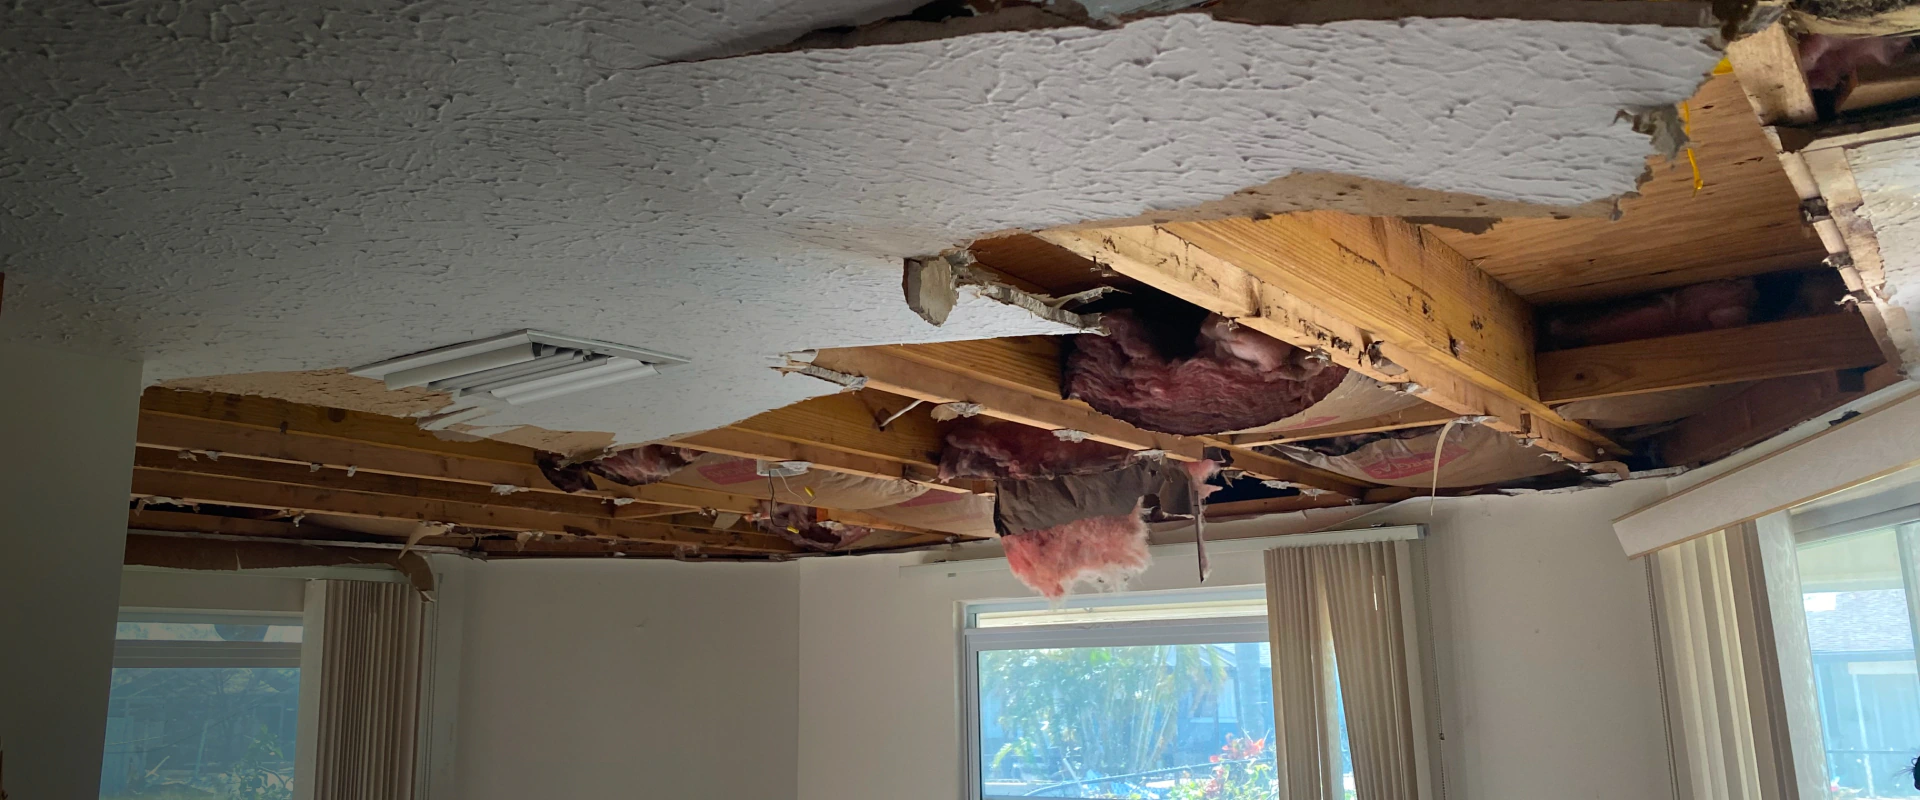 damaged ceiling before restoration